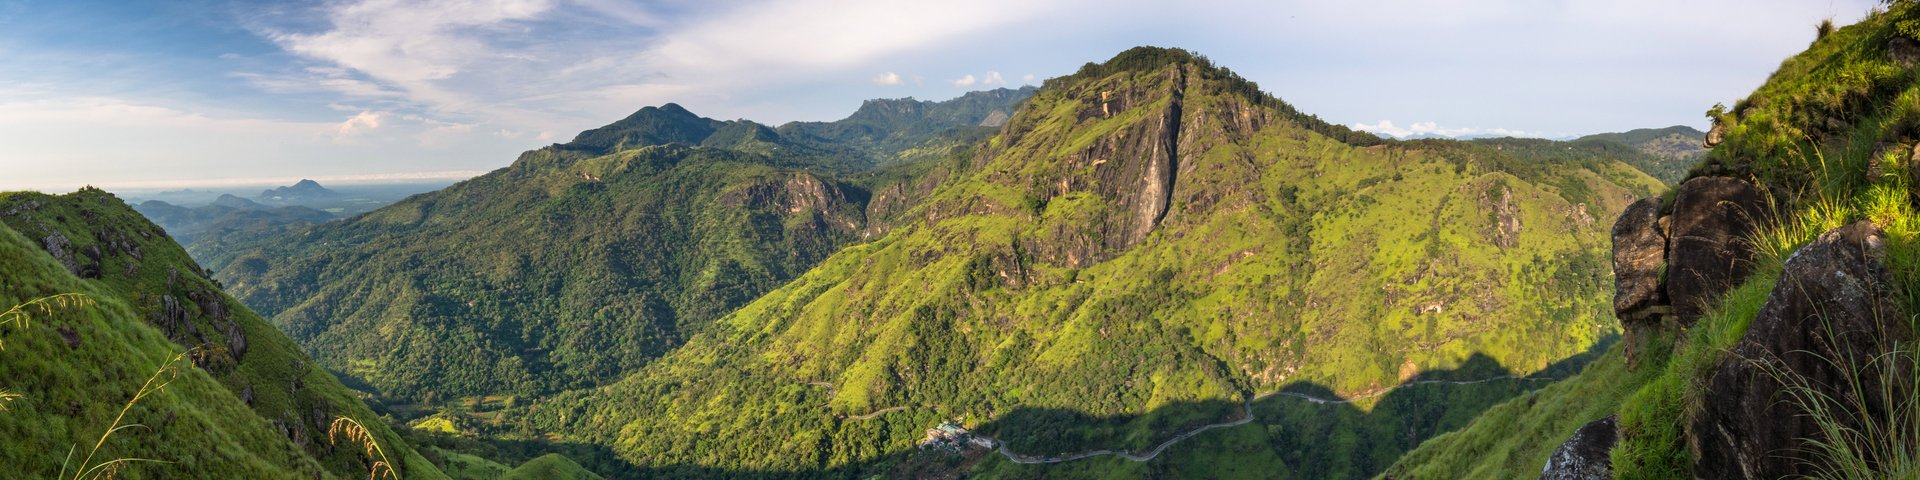 Bergpanorama in Sri Lanka